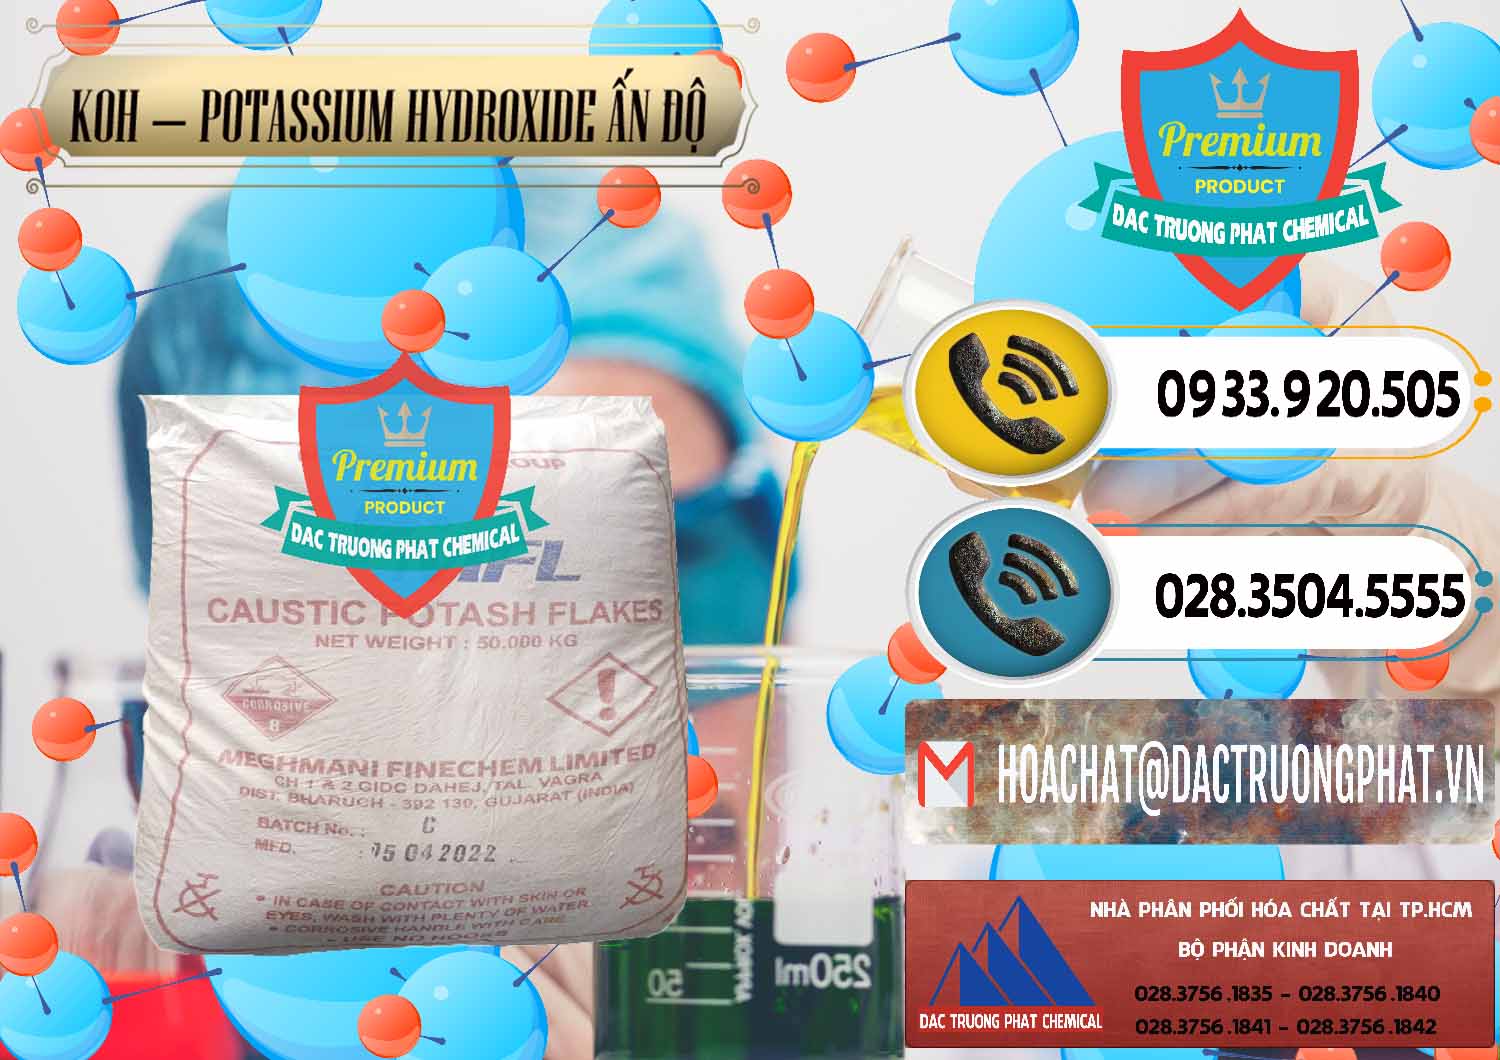 Cty bán ( phân phối ) KOH ( 90%) – Potassium Hydroxide Ấn Độ India - 0352 - Nơi chuyên kinh doanh ( cung cấp ) hóa chất tại TP.HCM - hoachatdetnhuom.vn